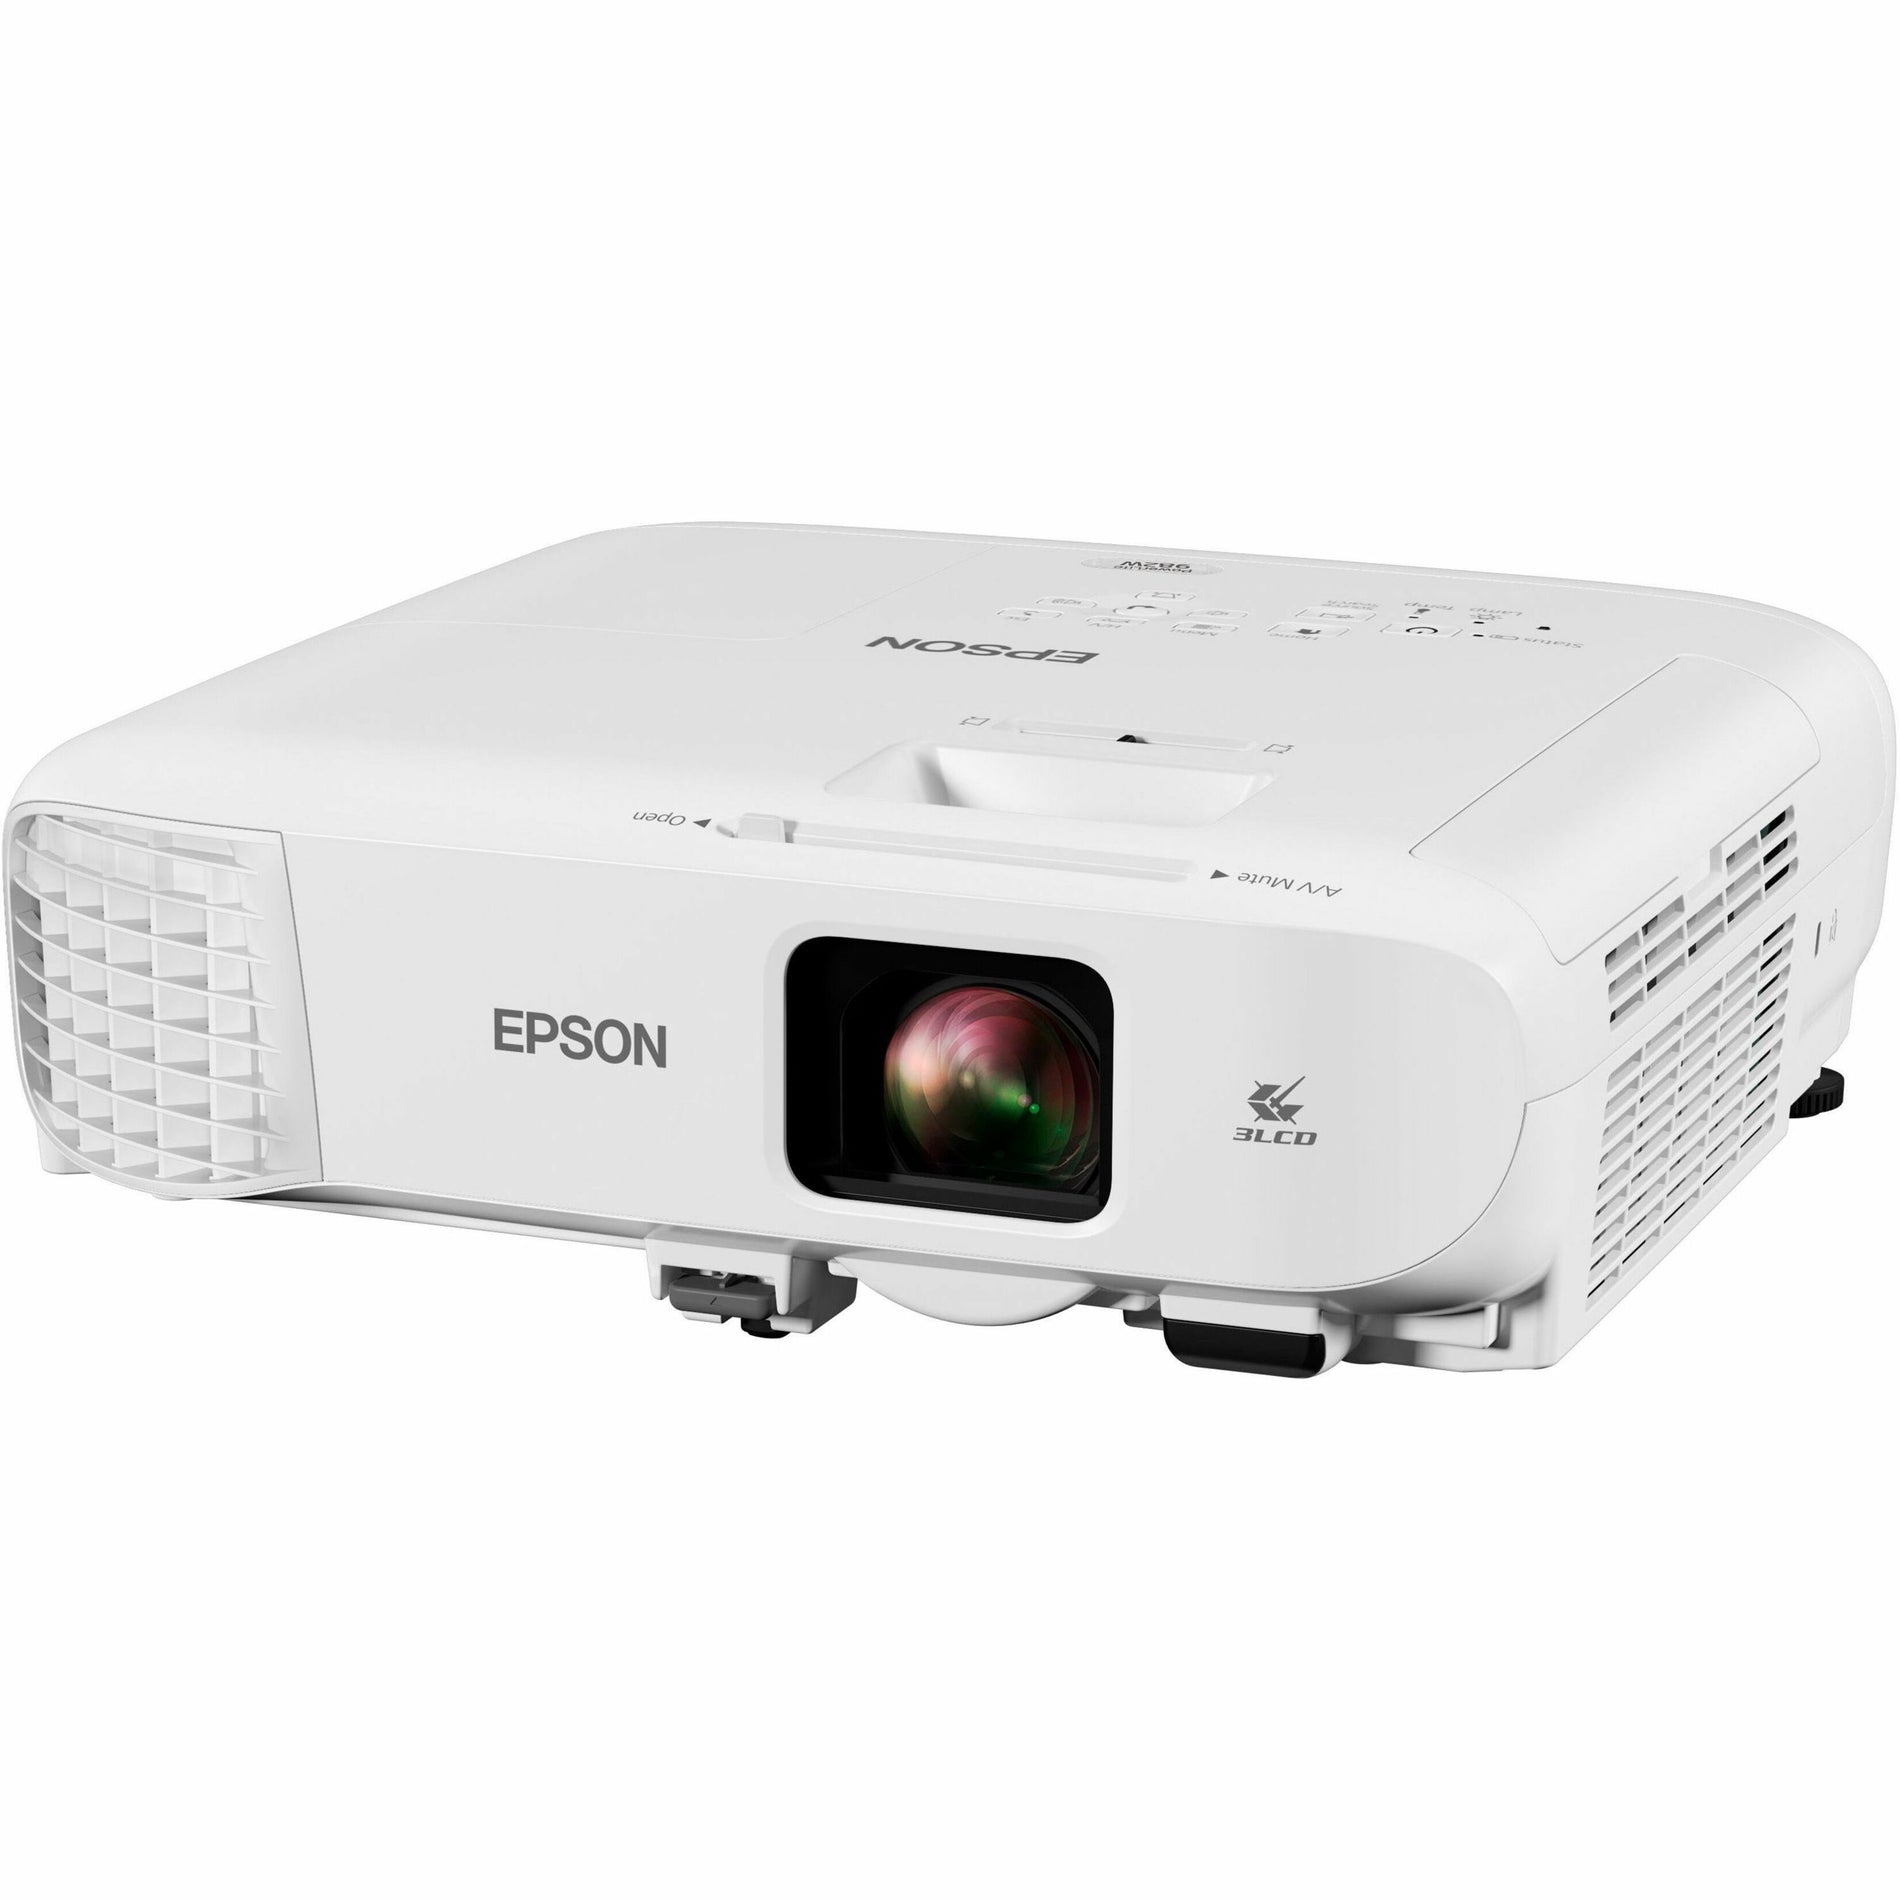 エプソン V11H987020 PowerLite 982W 3LCD WXGA クラスルームプロジェクター デュアル HDMI 4200 lm 16:10 - エプソン: Epson